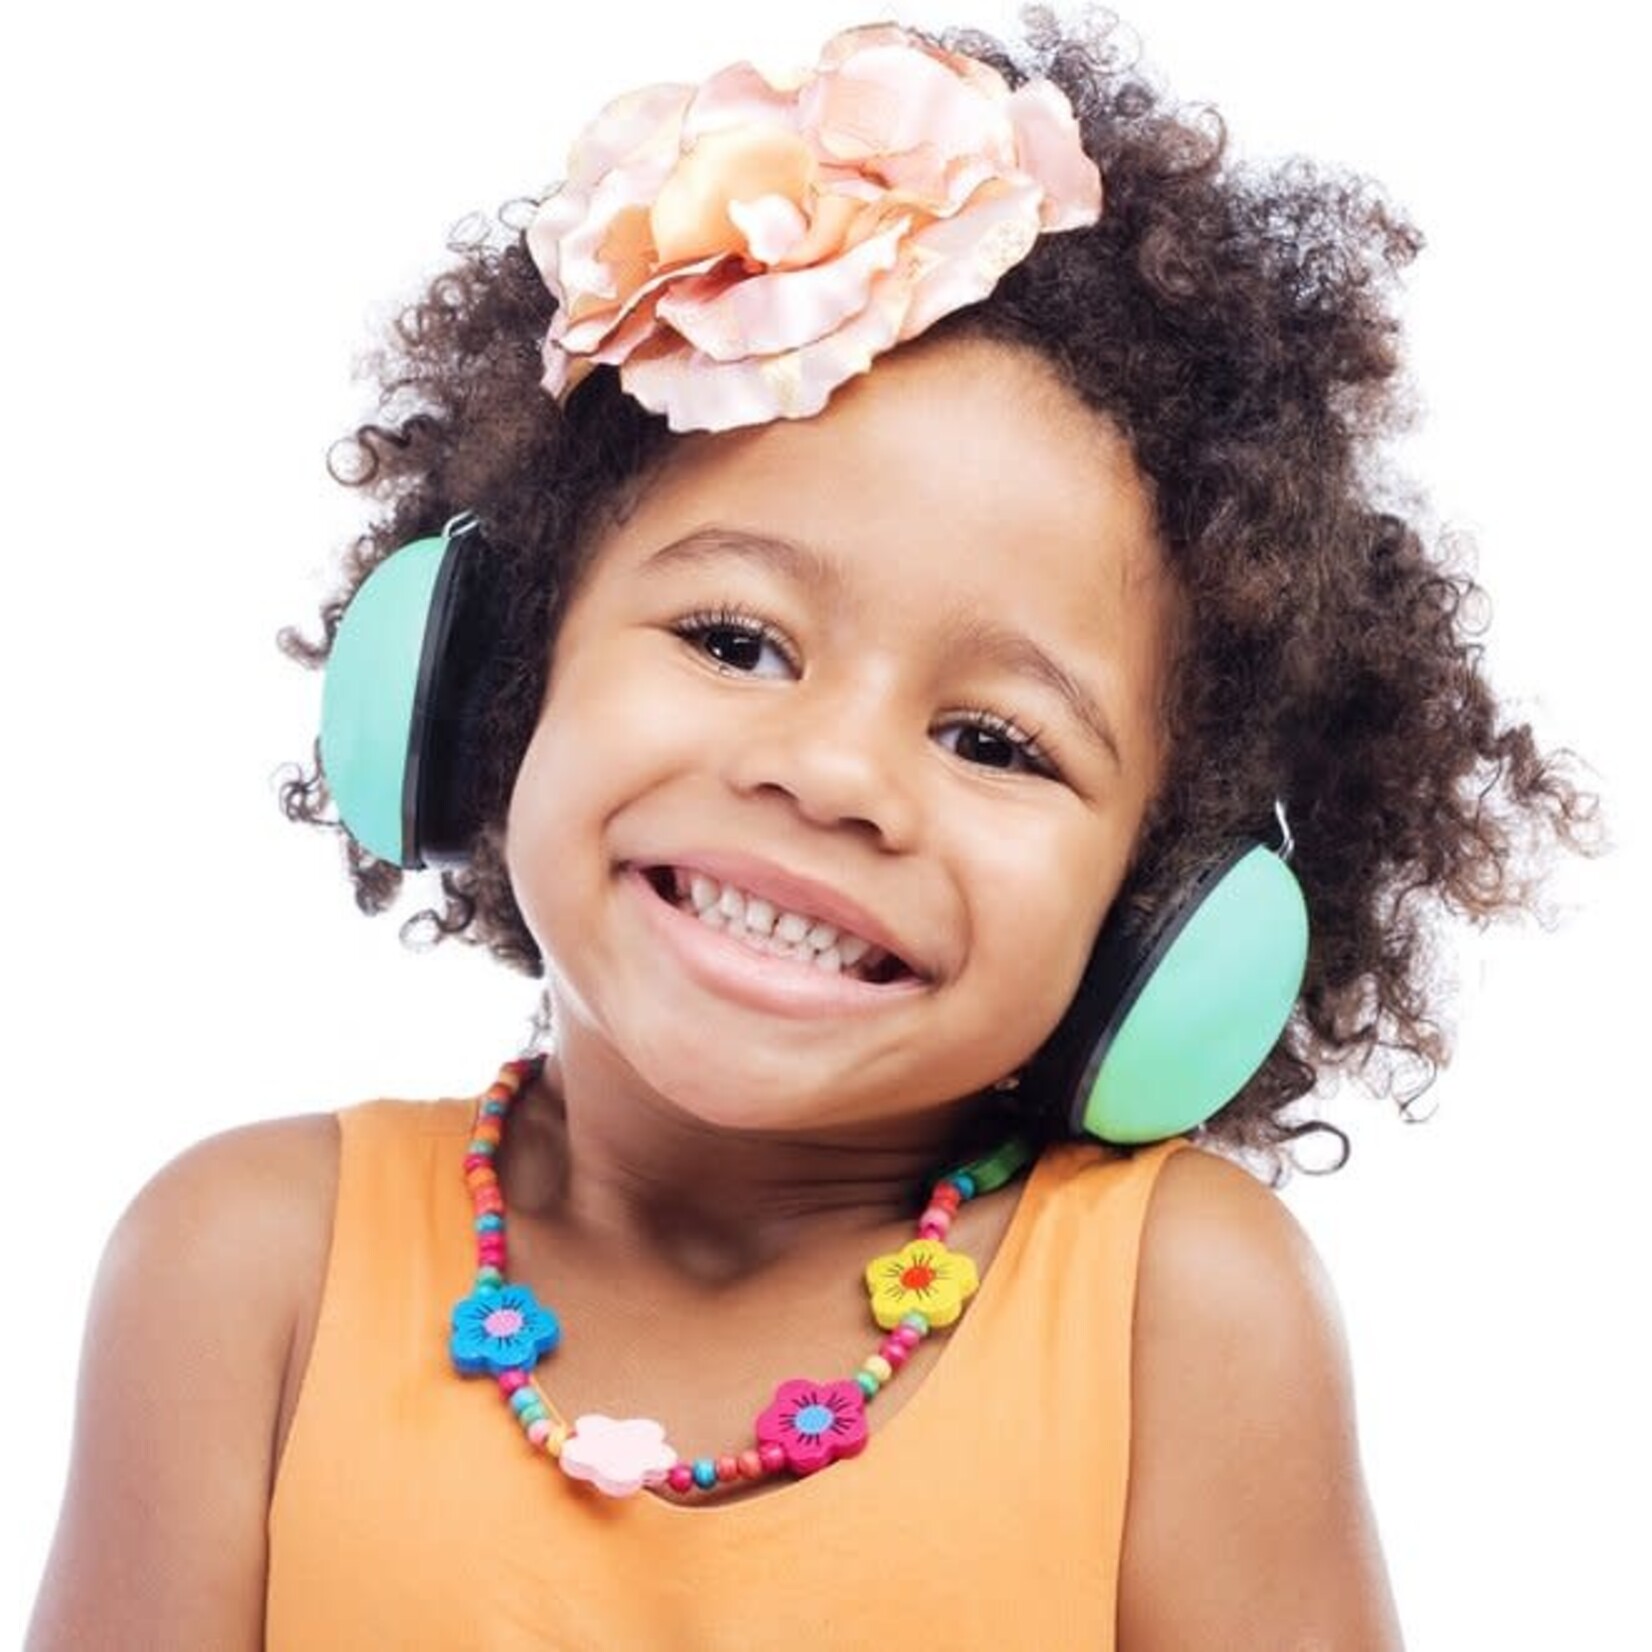 Alecto Casque Anti-bruit pour Enfants - Noir - Sécurité domestique Alecto  sur L'Armoire de Bébé